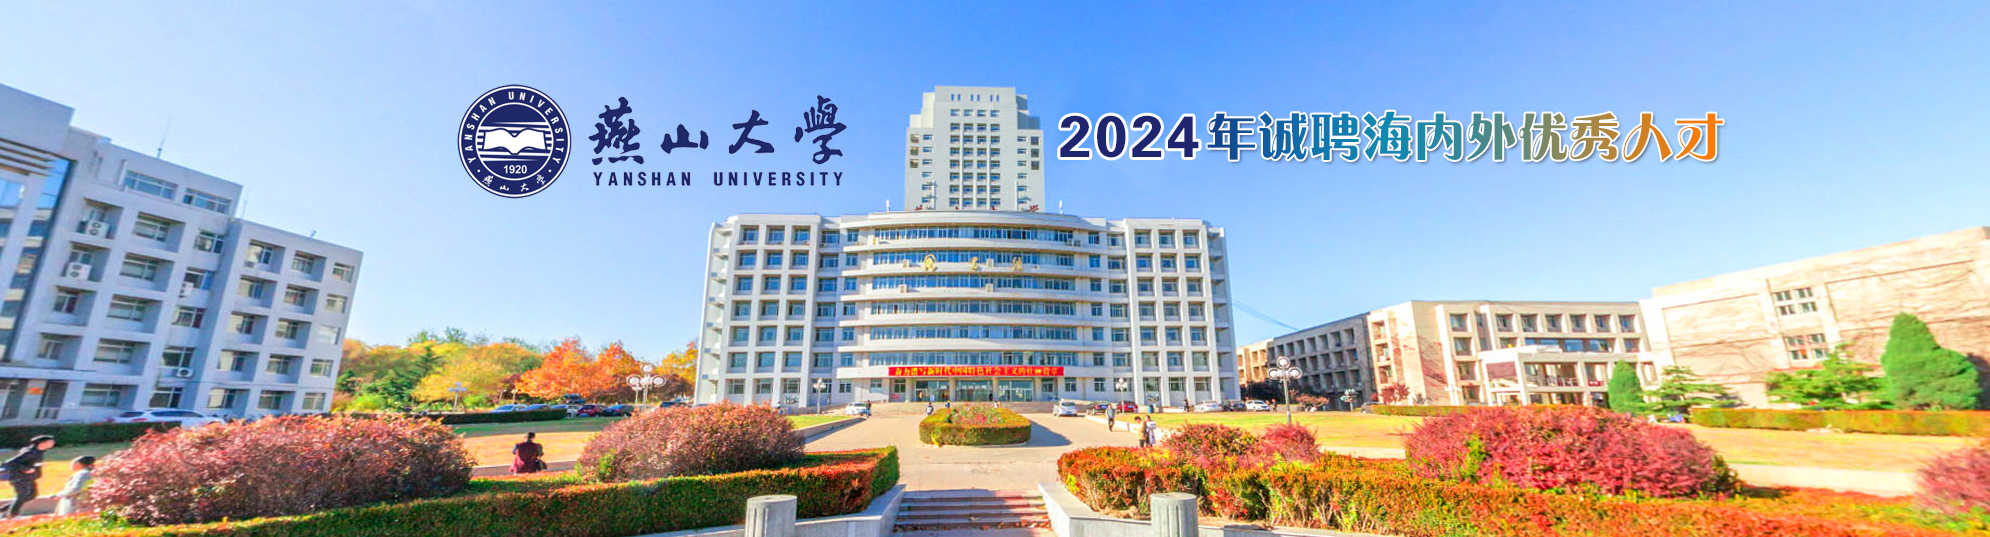 燕山大学2024年诚聘海内外优秀人才